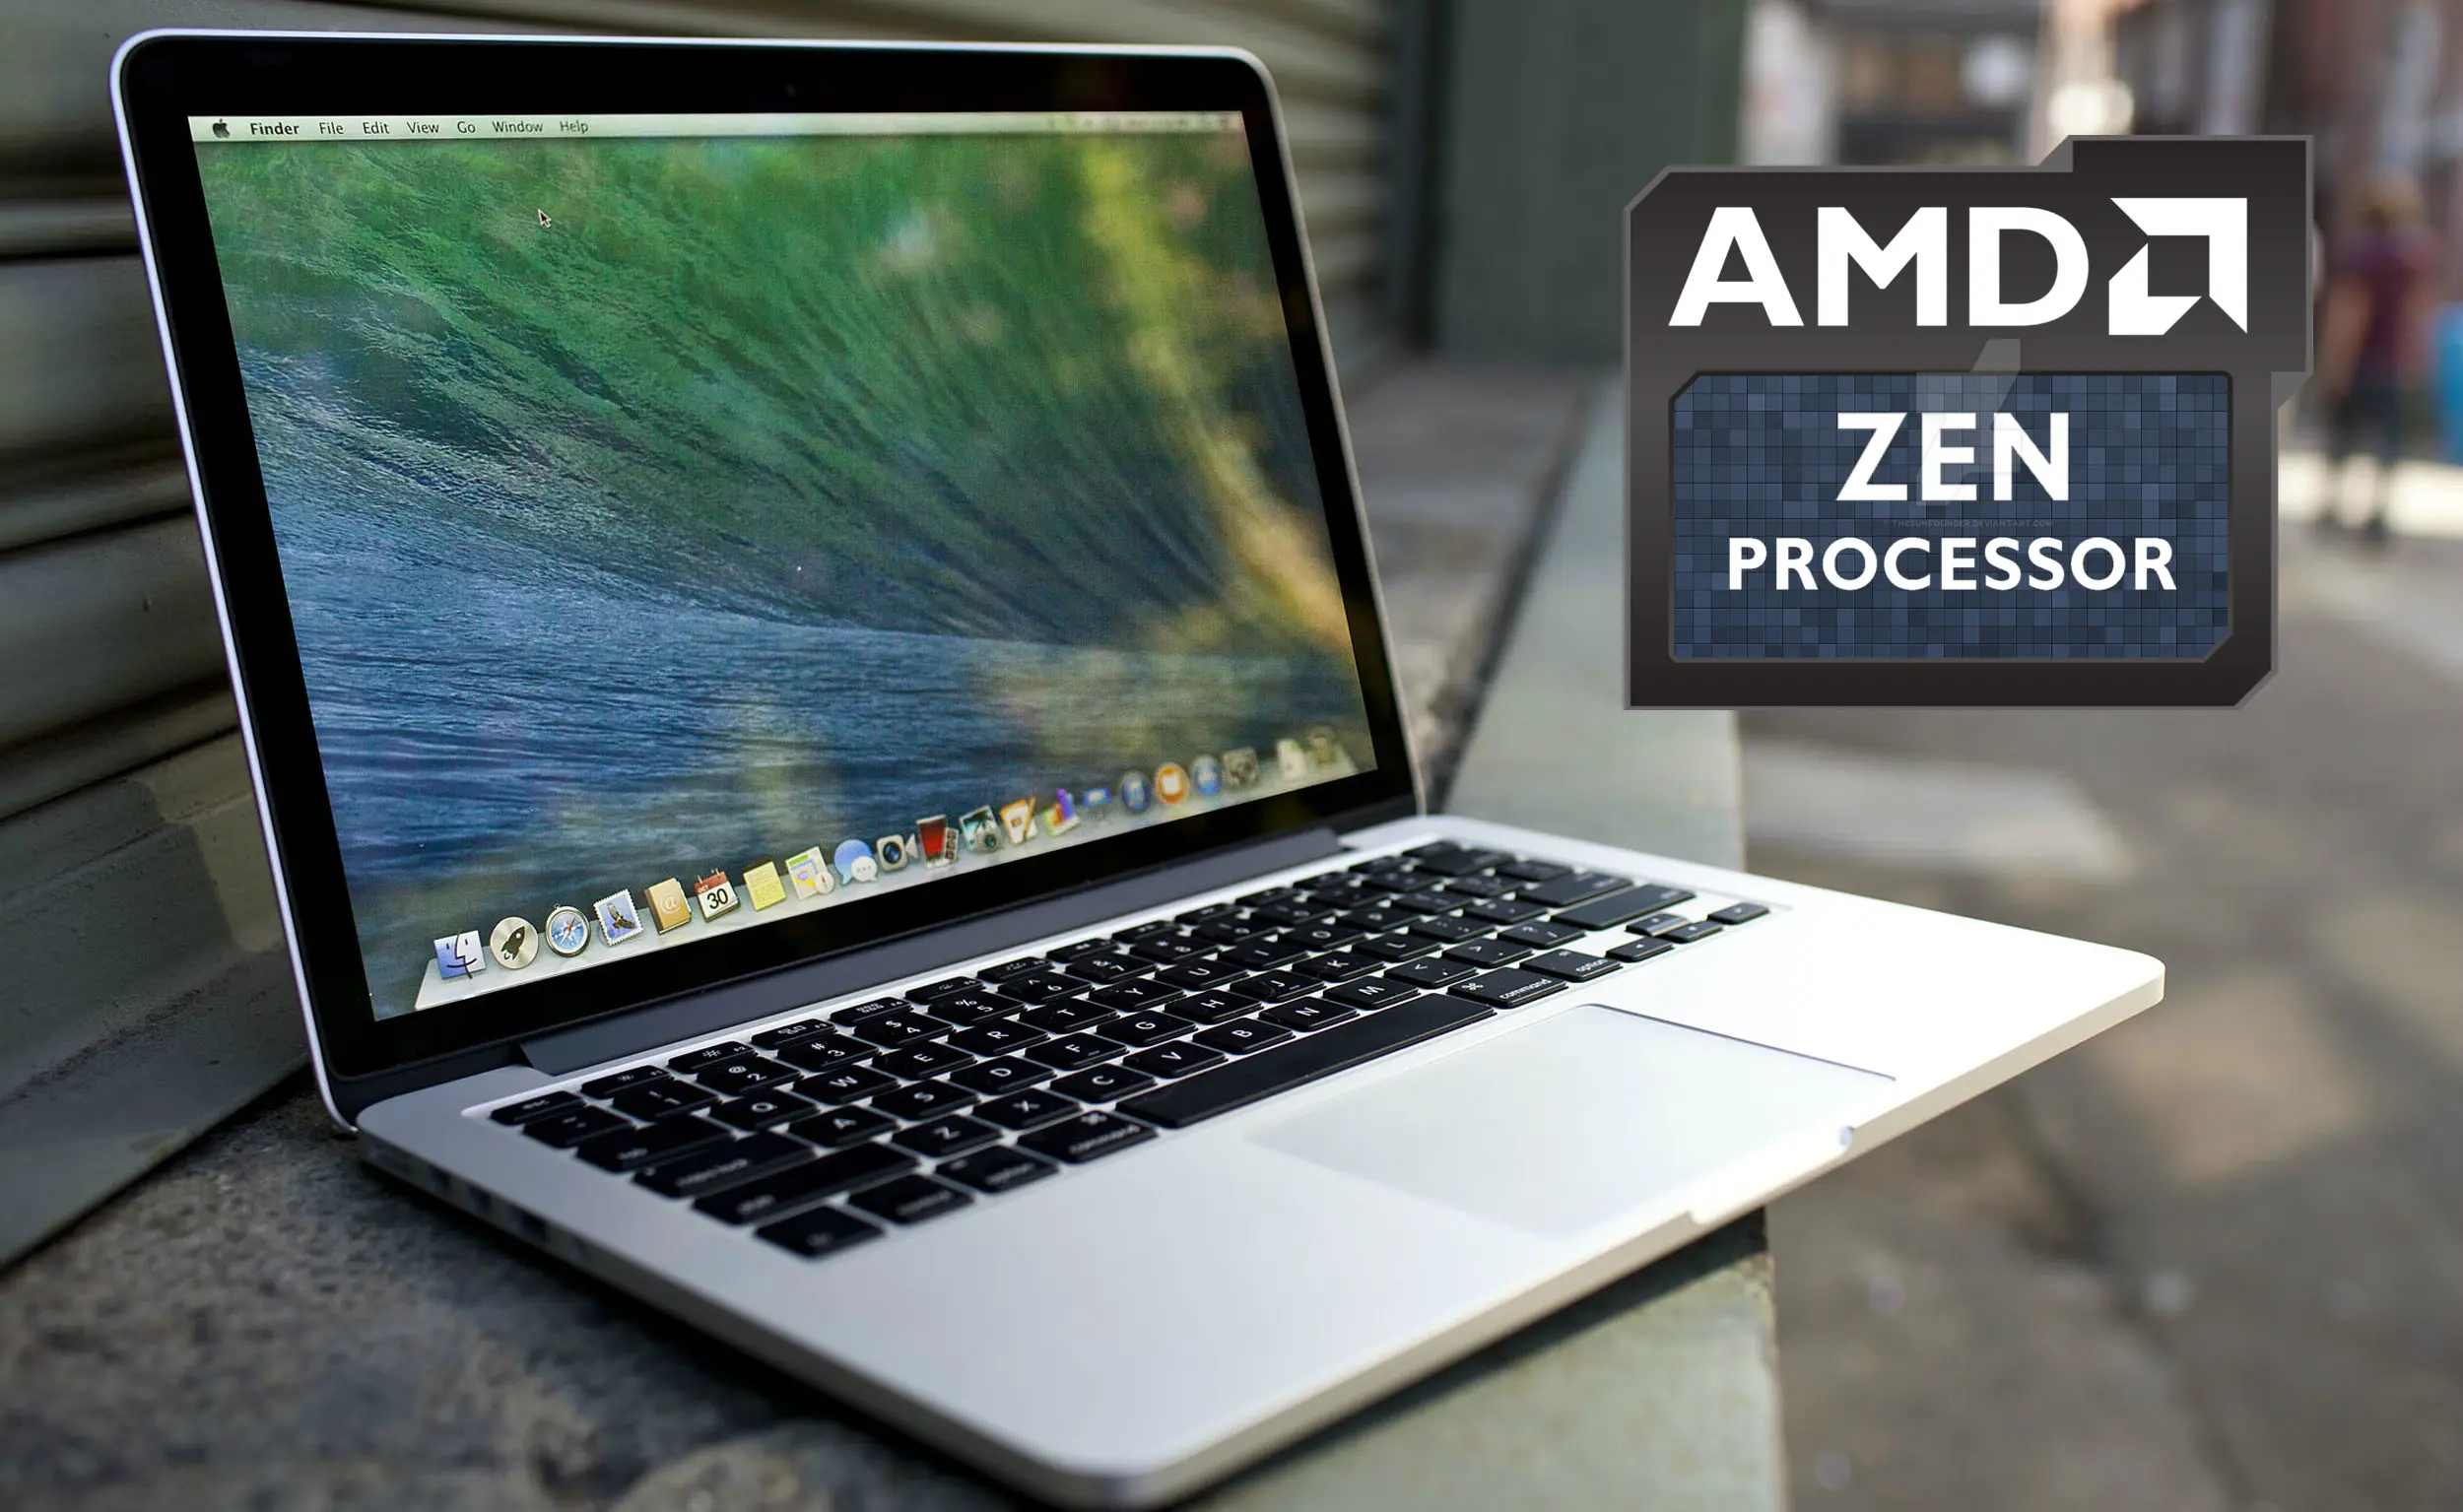 Apple apostaría por AMD Zen para los MacBooks de 2017